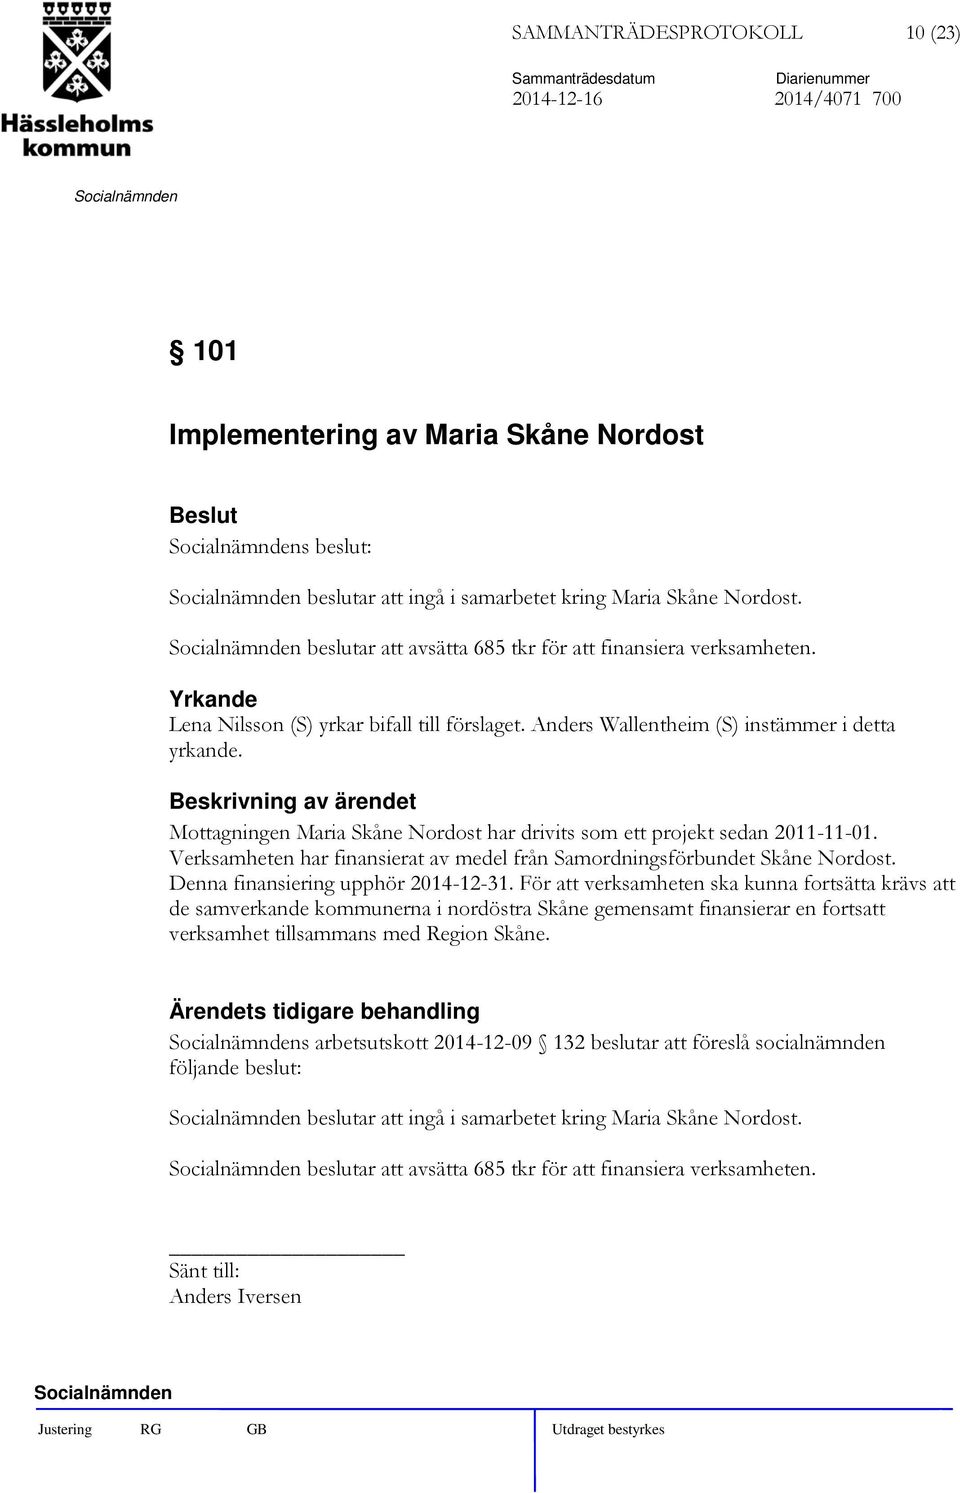 Mottagningen Maria Skåne Nordost har drivits som ett projekt sedan 2011-11-01. Verksamheten har finansierat av medel från Samordningsförbundet Skåne Nordost. Denna finansiering upphör 2014-12-31.